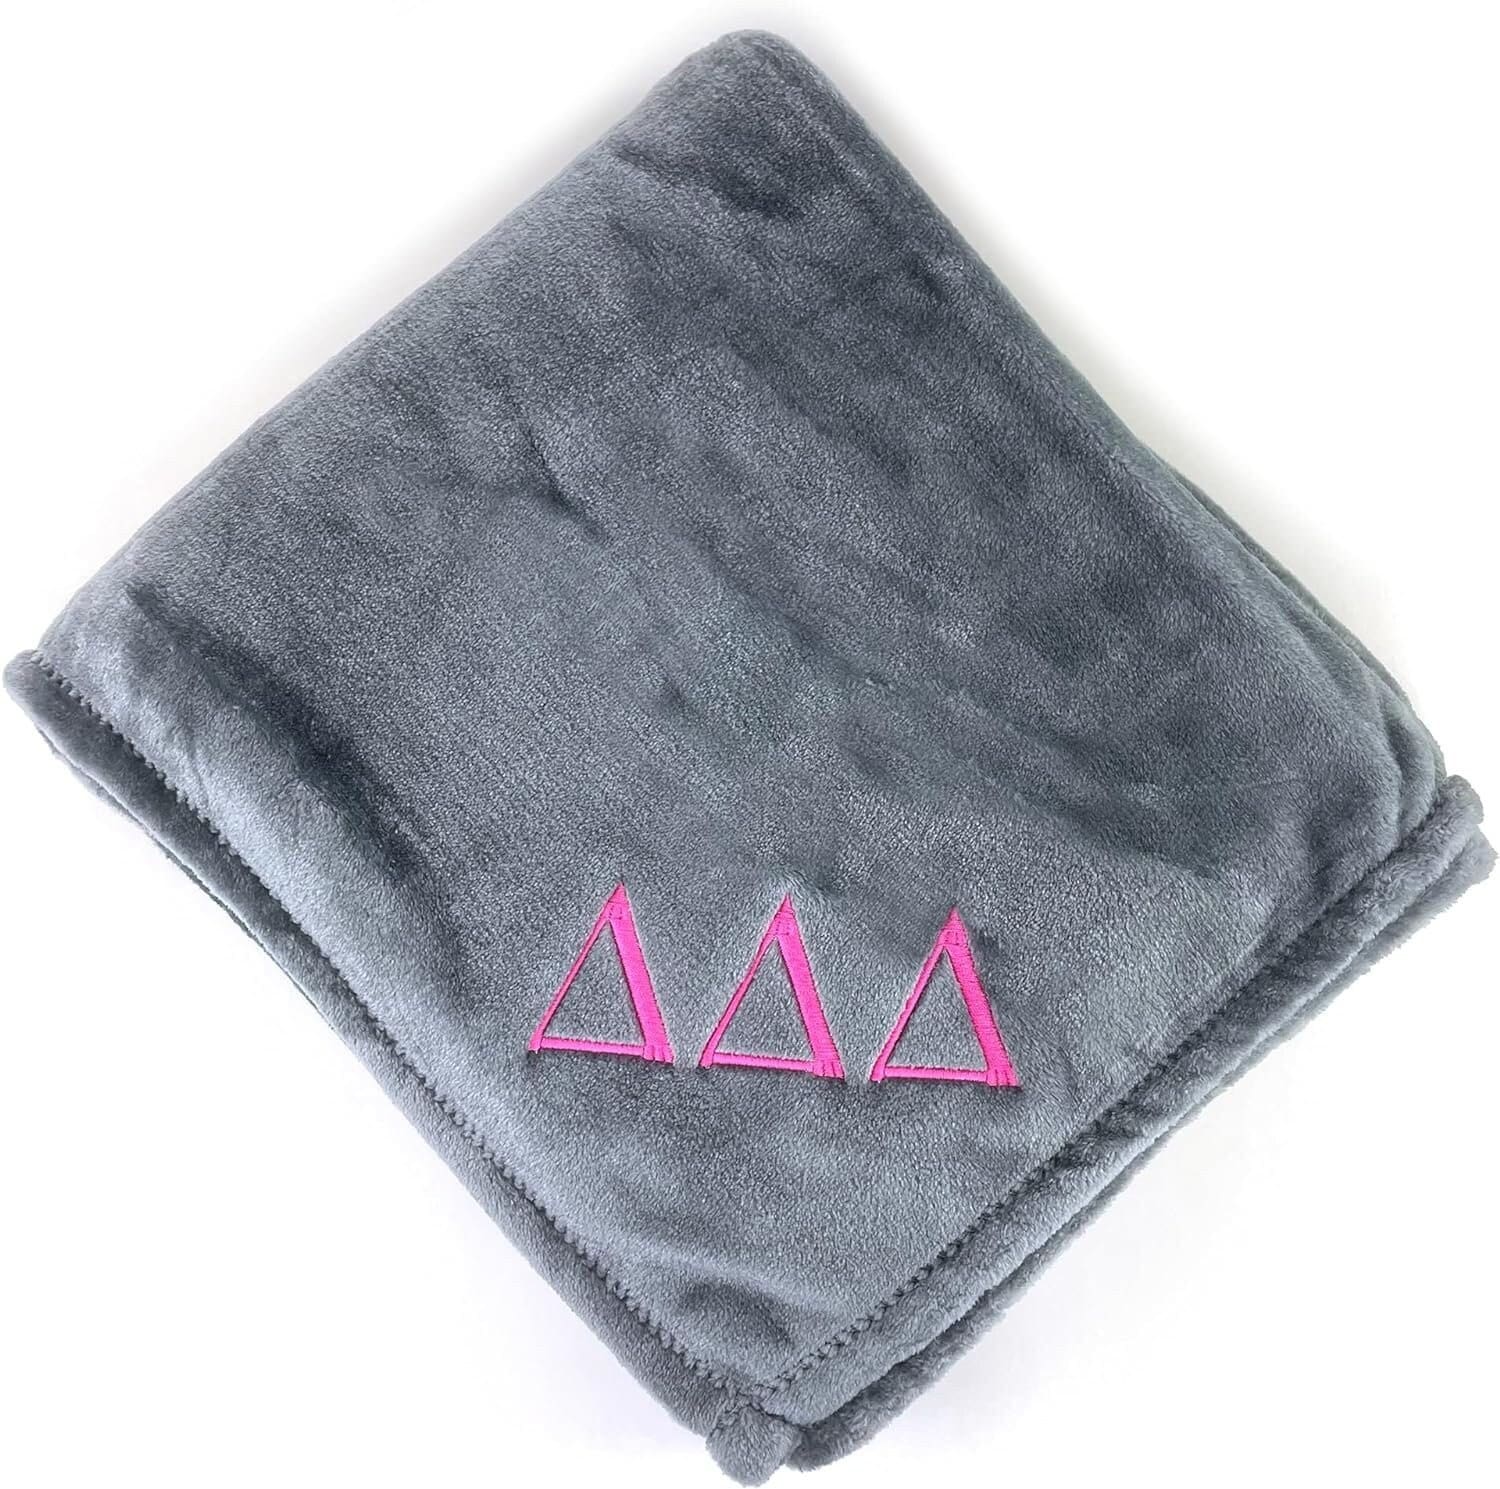 Delta Delta Delta Plush Throw Blanket - Grey/Pink